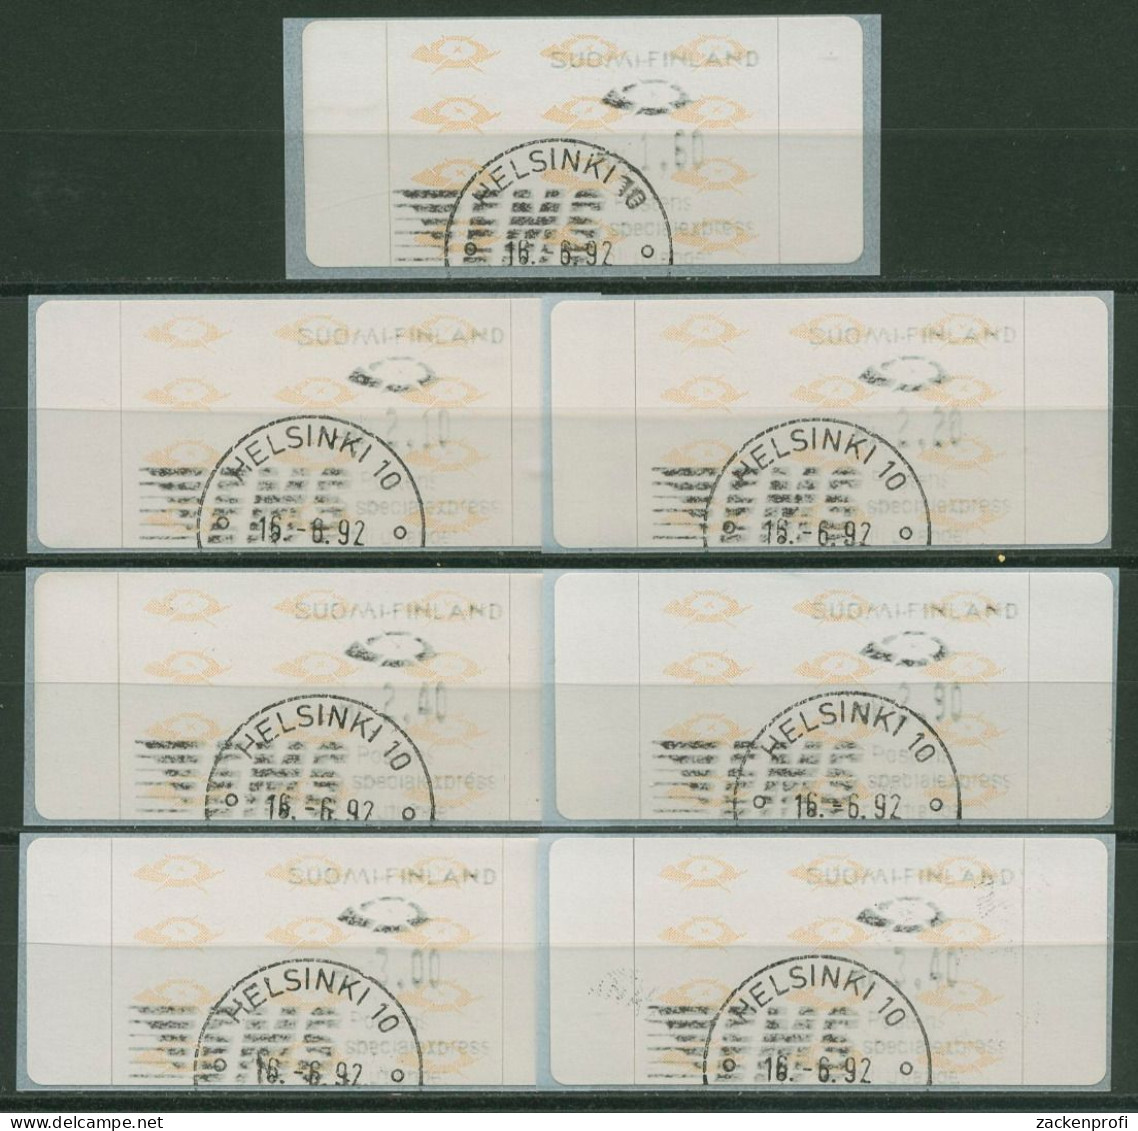 Finnland Automatenmarken 1992 Posthörner Satz 7 Werte ATM 12.2 S 1 Gestempelt - Automaatzegels [ATM]